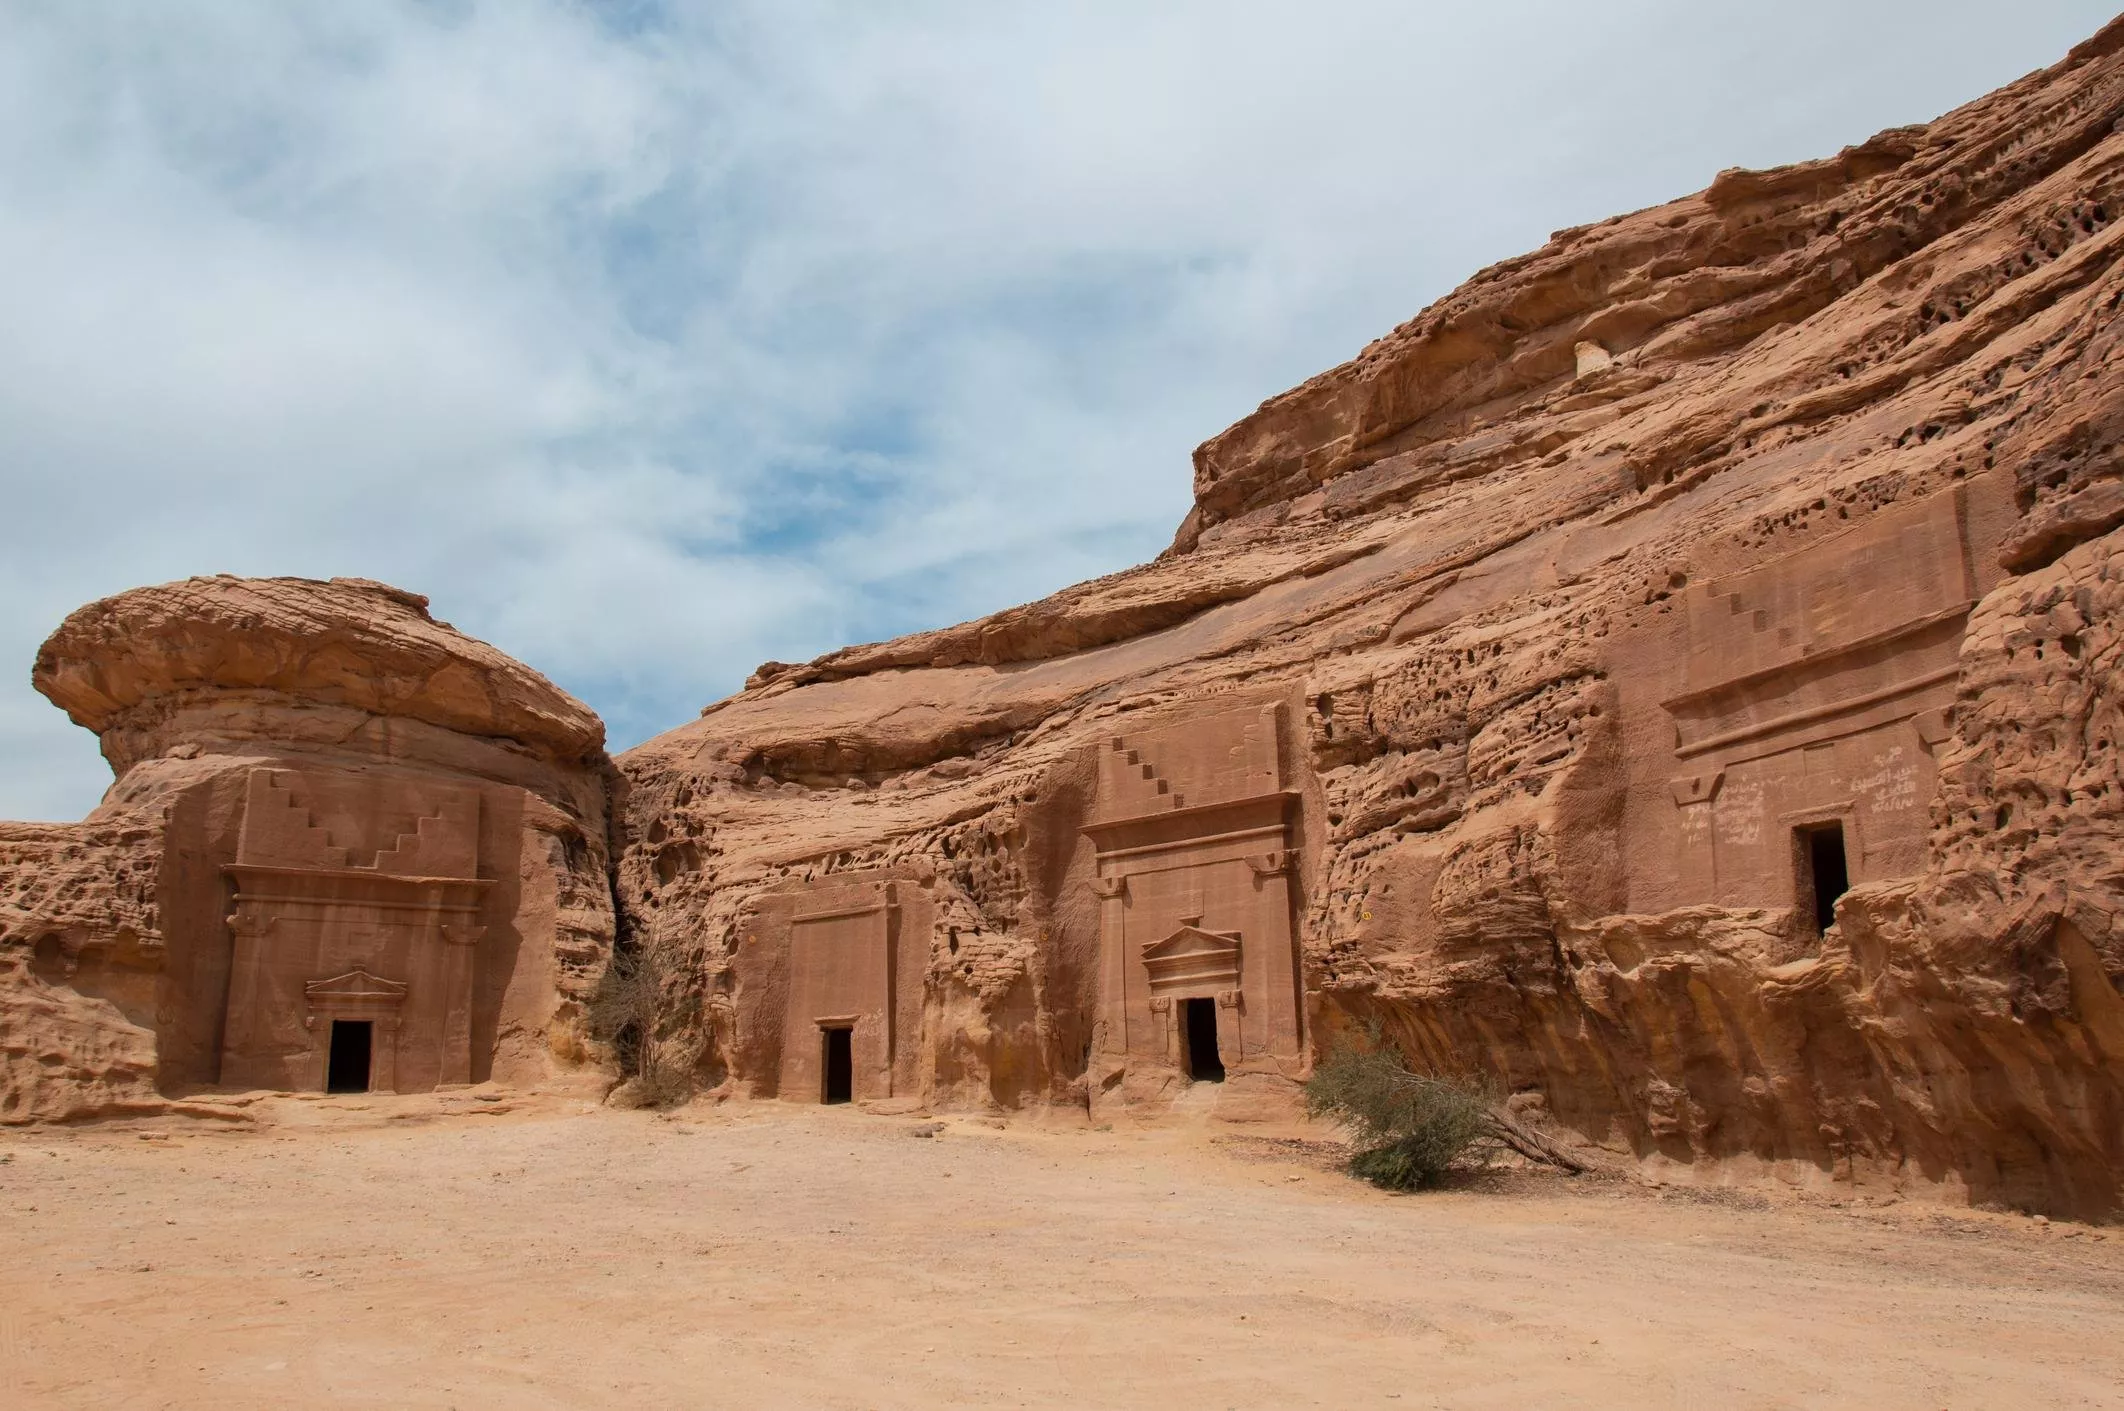 السياحة في السعودية: 9 اماكن سياحية في المدينة المنورة، اجعليها وجهتكِ المقبلة